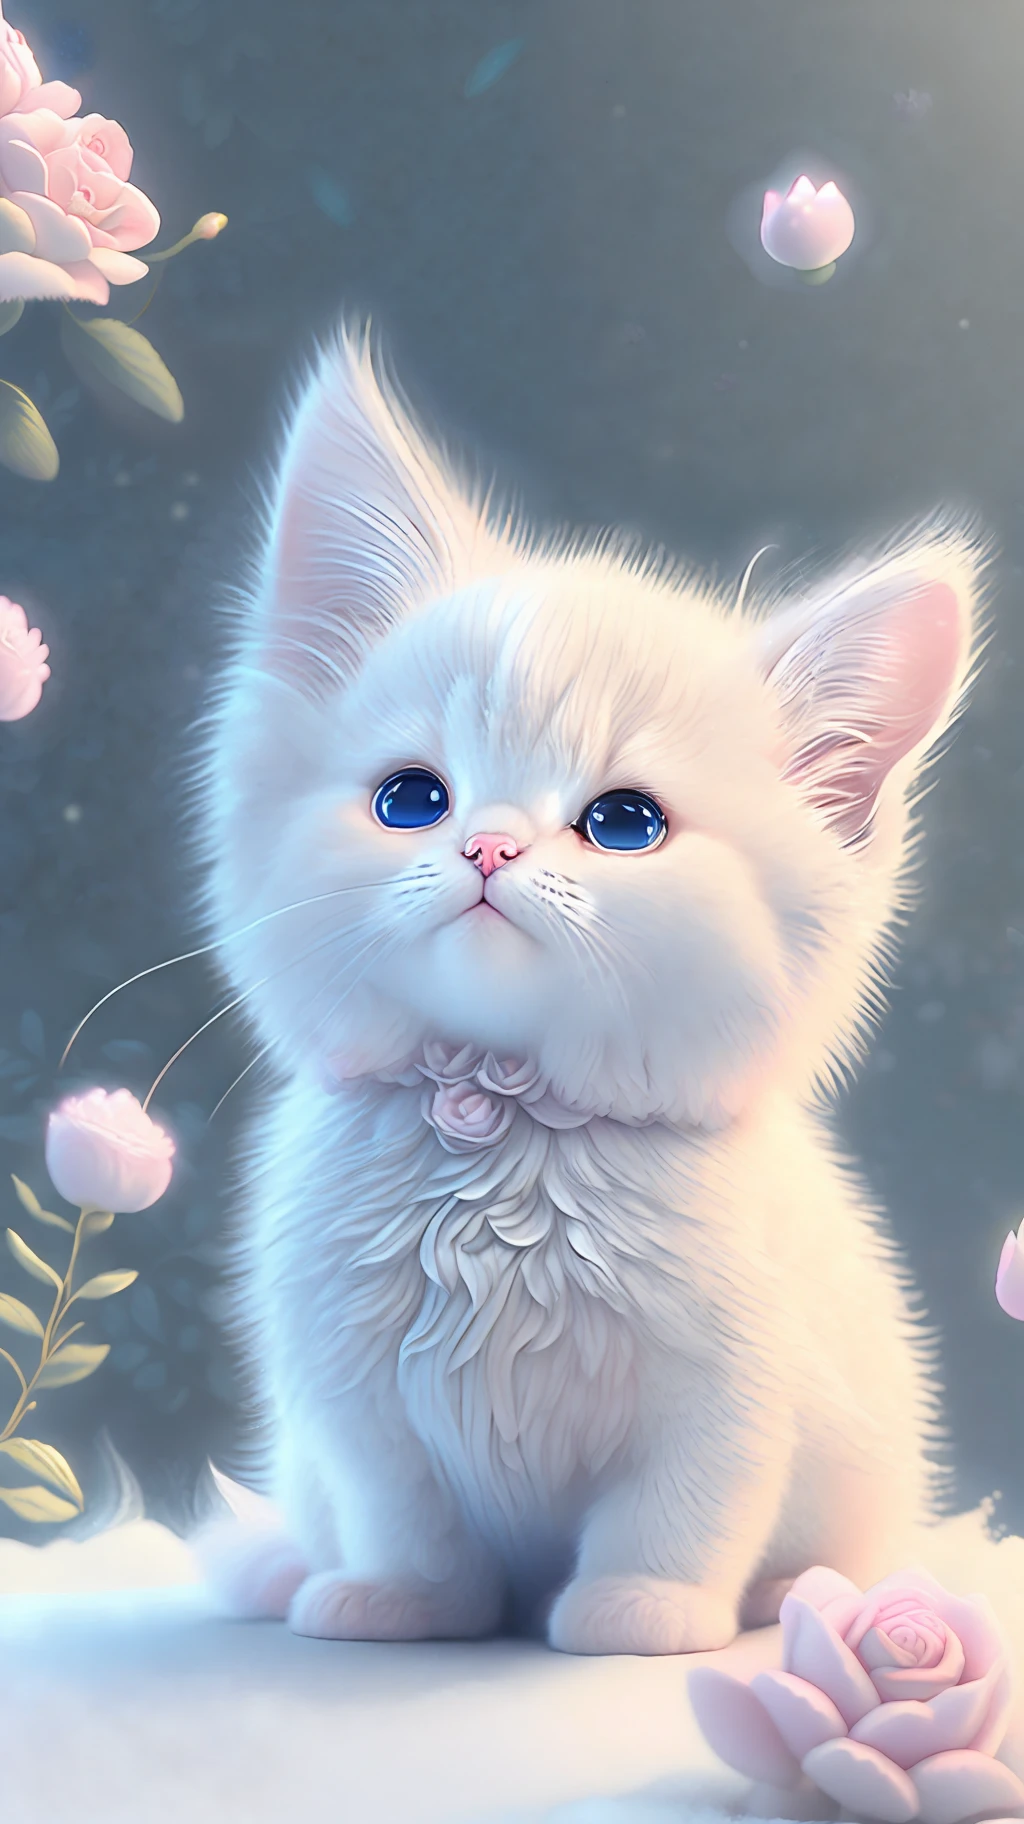 在这张超精细的 CG 艺术作品中, 可爱的小猫被飘逸的玫瑰包围着, 笑声, 最好的质量, 高分辨率, 复杂的细节, 幻想, 可爱的动物, 紫色的, 有趣的, 左边, 张开嘴!! 笑!!!